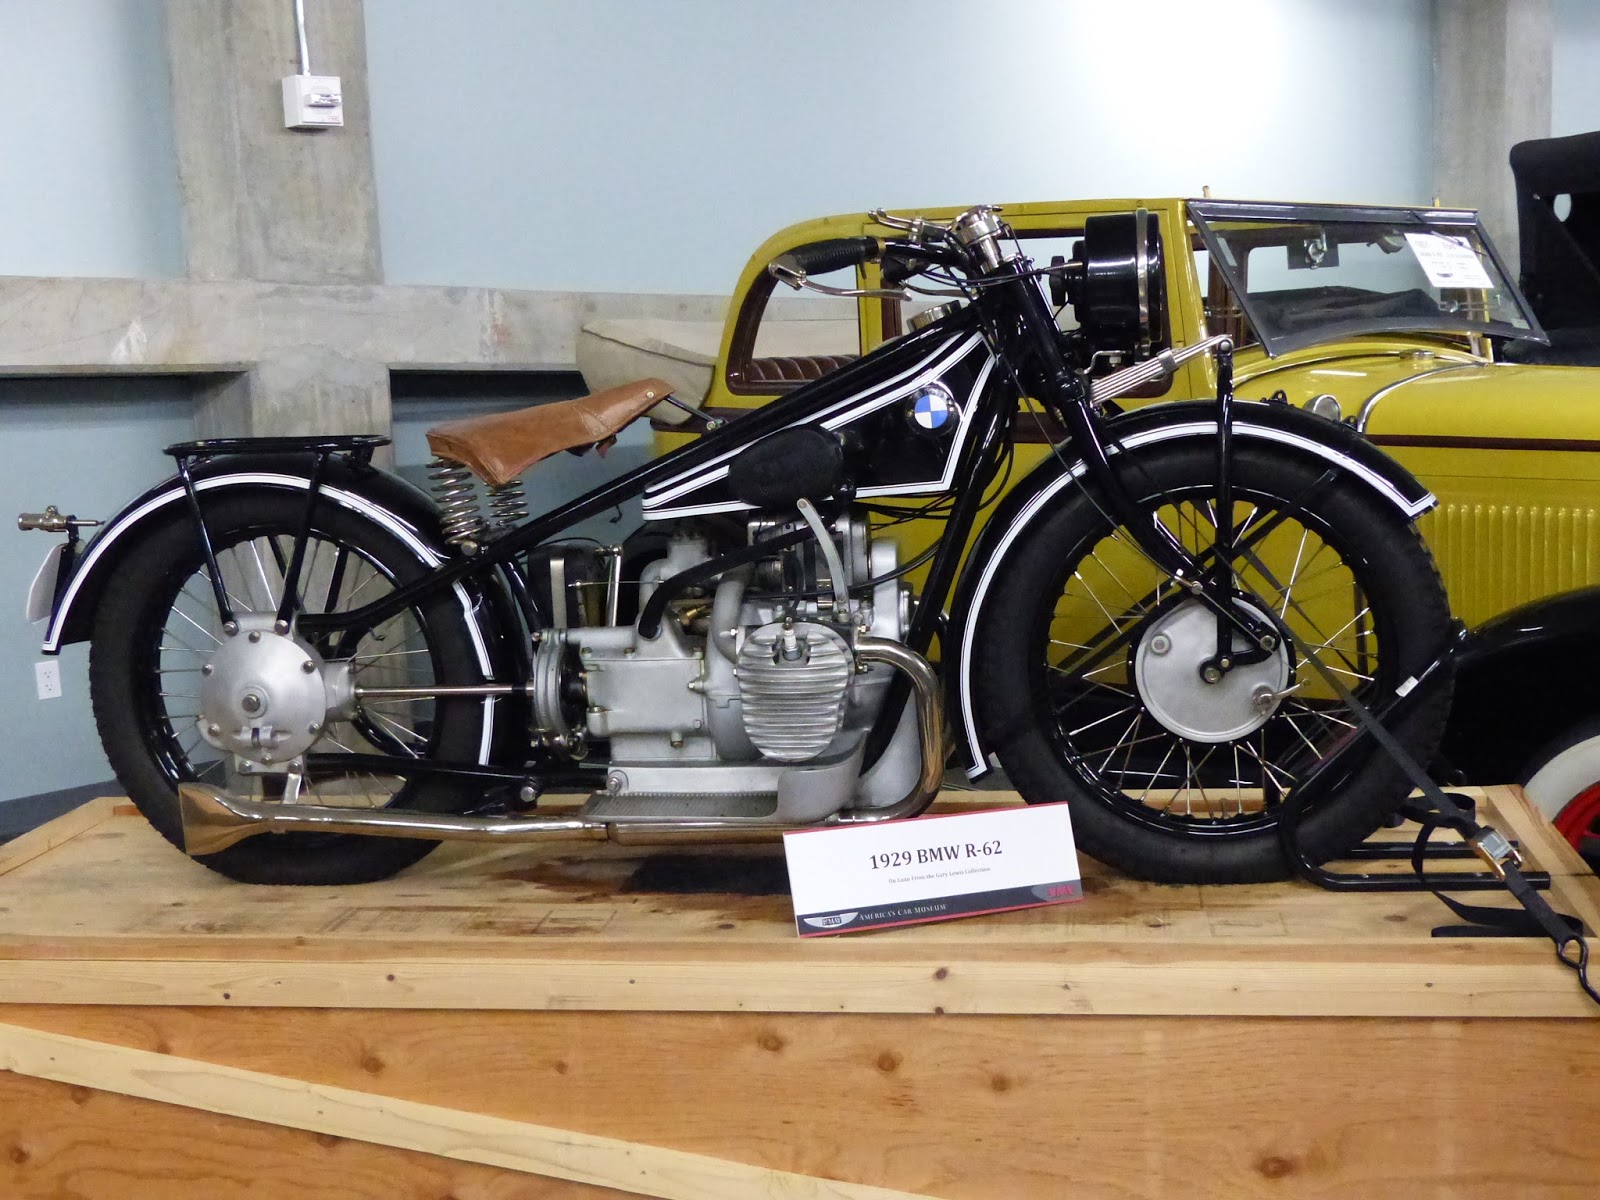 OldMotoDude: Vintage BMW Motorcycles on display at LeMay "America's Car